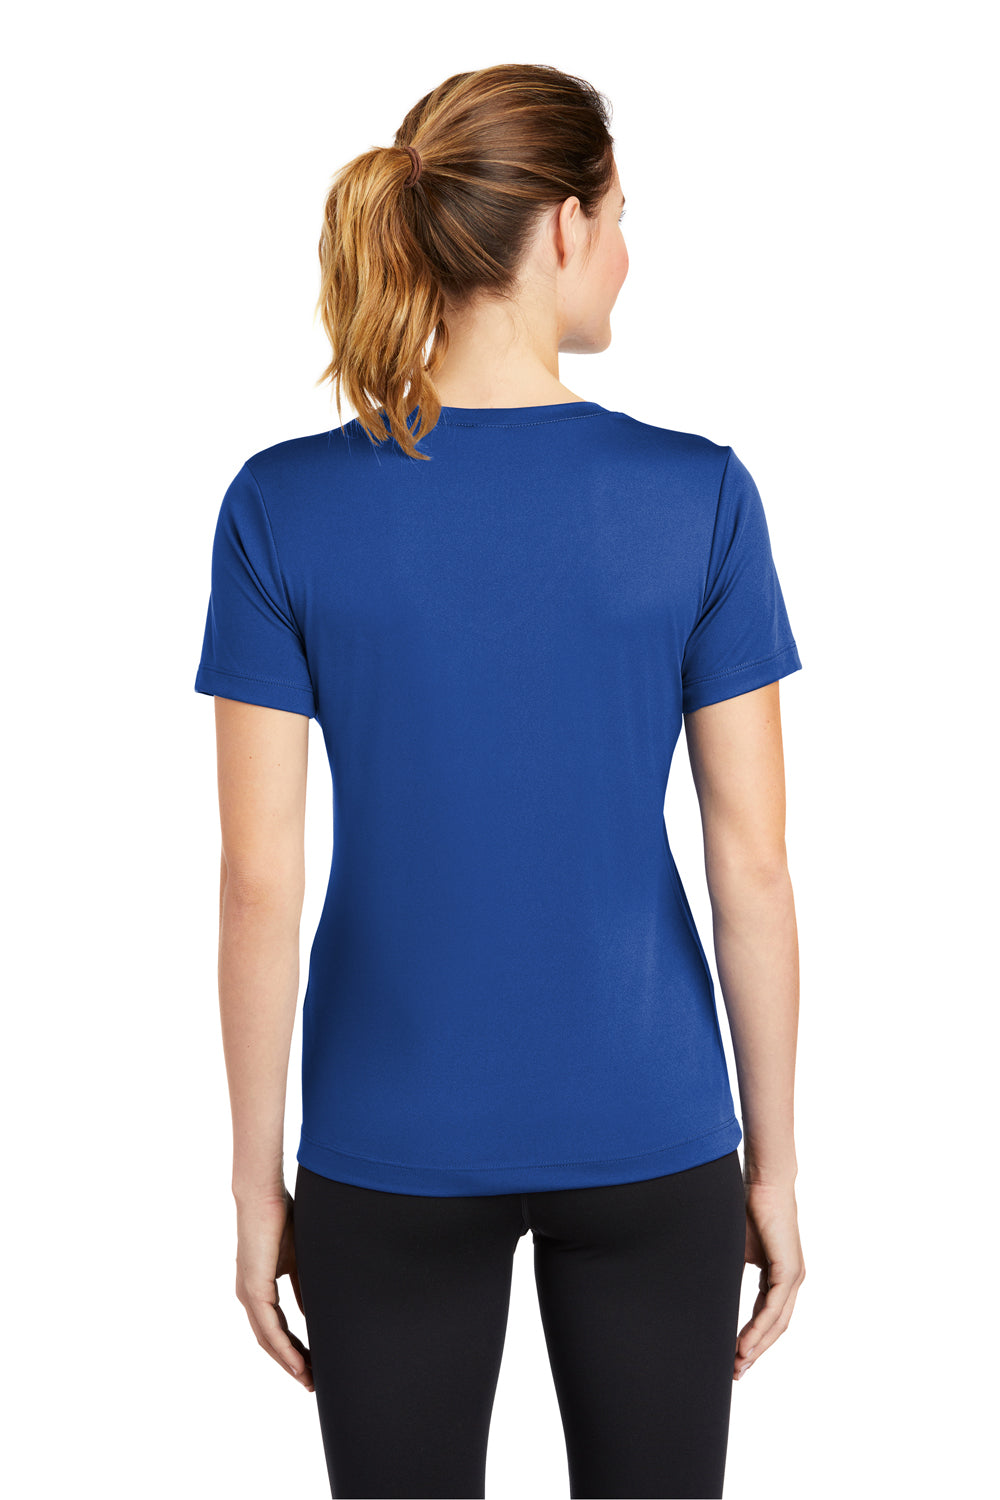 Sport-Tek LST353 Womens Competitor Moisture Wicking Short Sleeve V-Neck T-Shirt Royal Blue Back